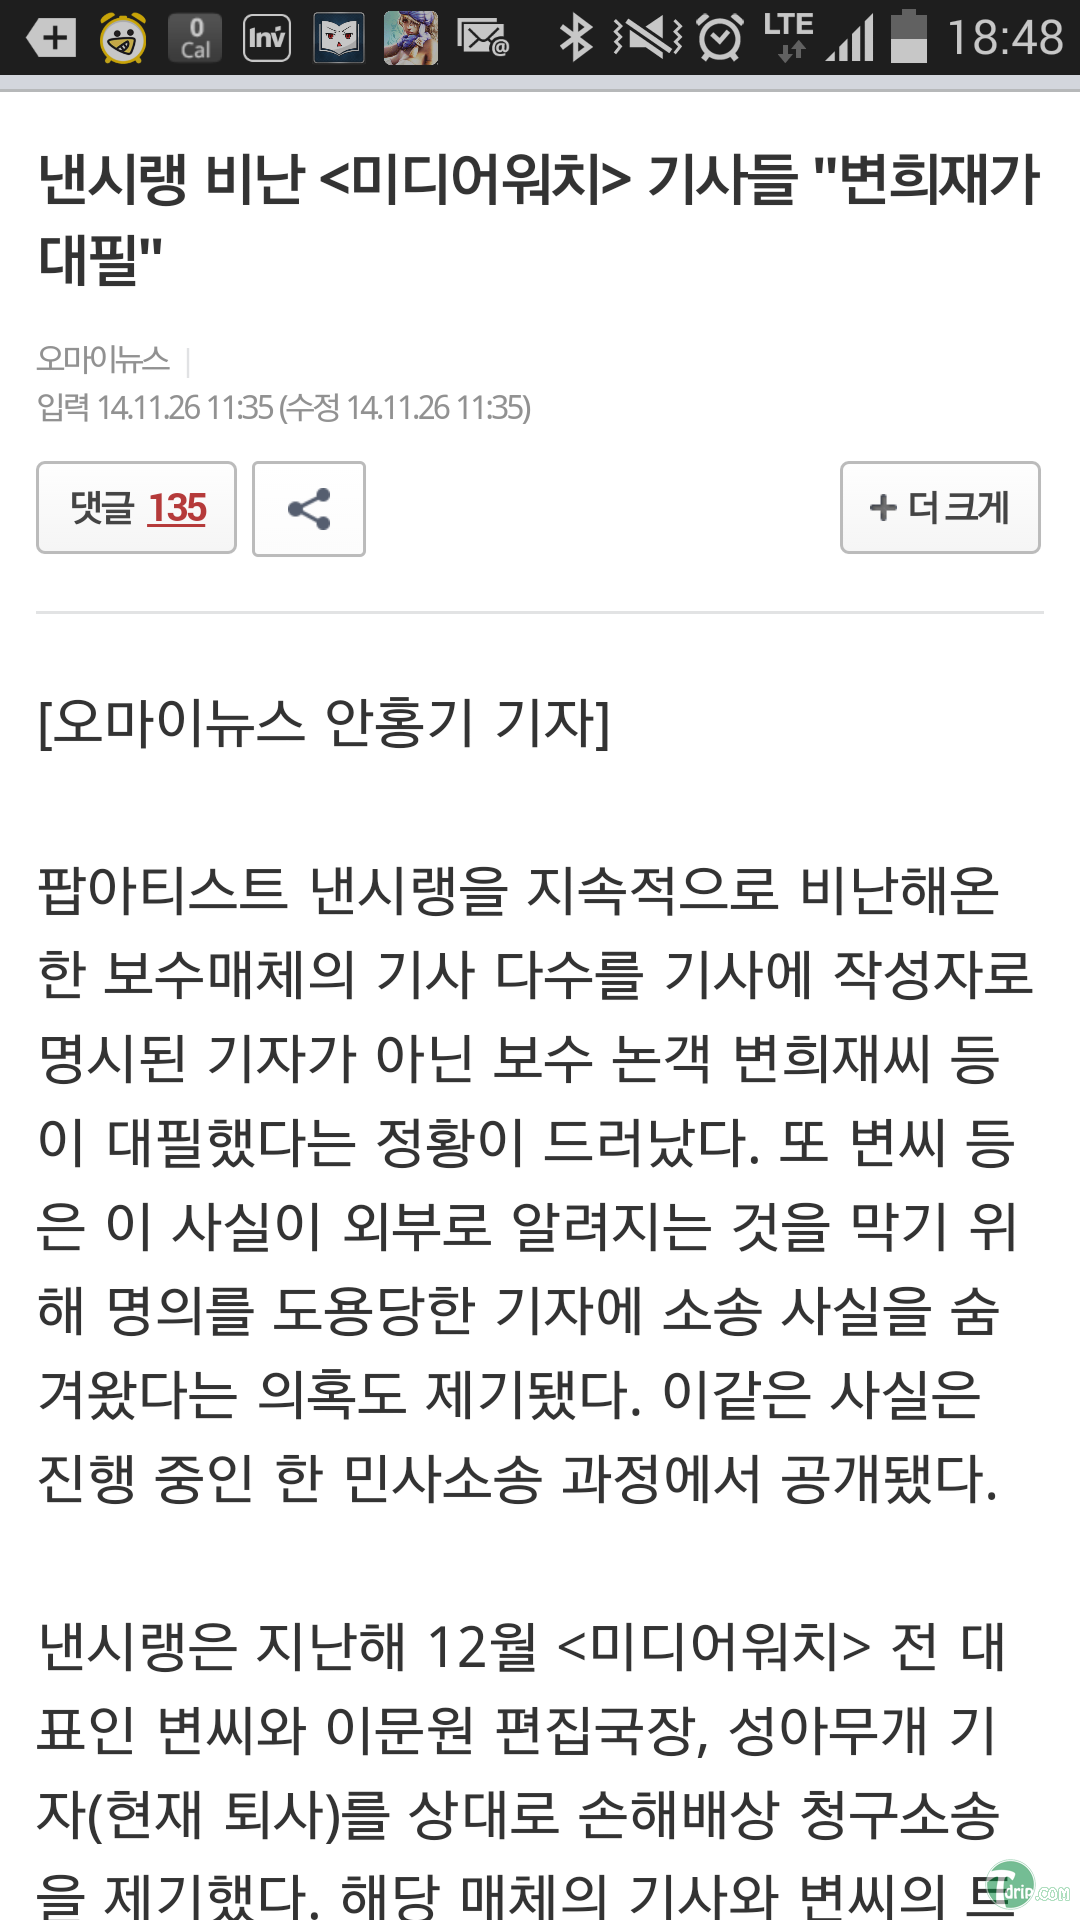 Screenshot_2014-11-26-18-48-55.png : 현시간 변TM 근황.